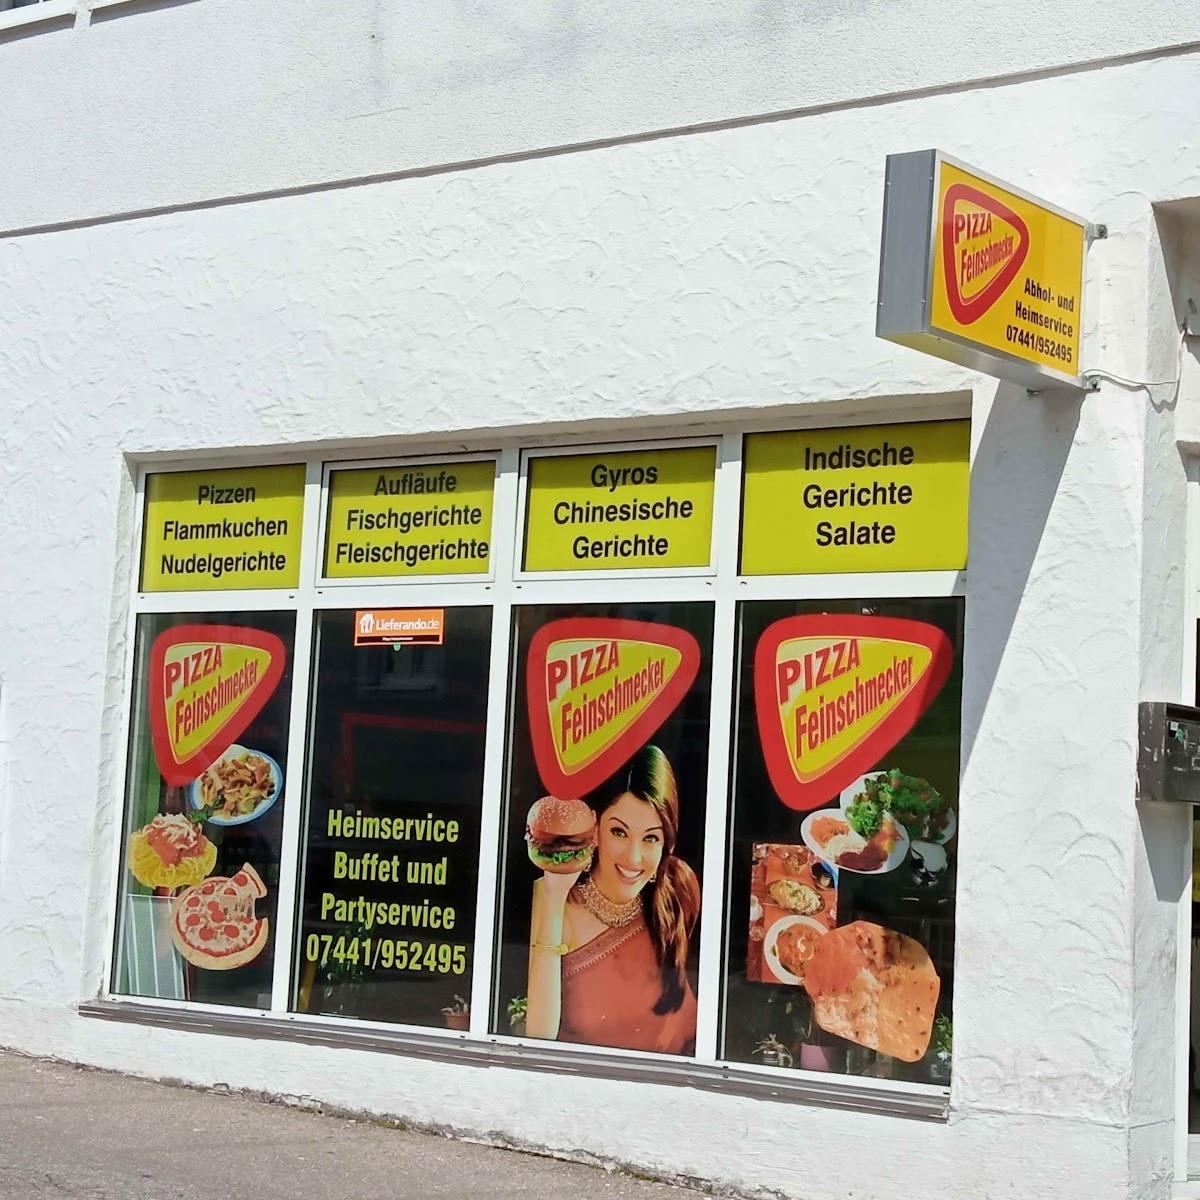 Restaurant "PIZZA FEINSCHMECKER" in Freudenstadt